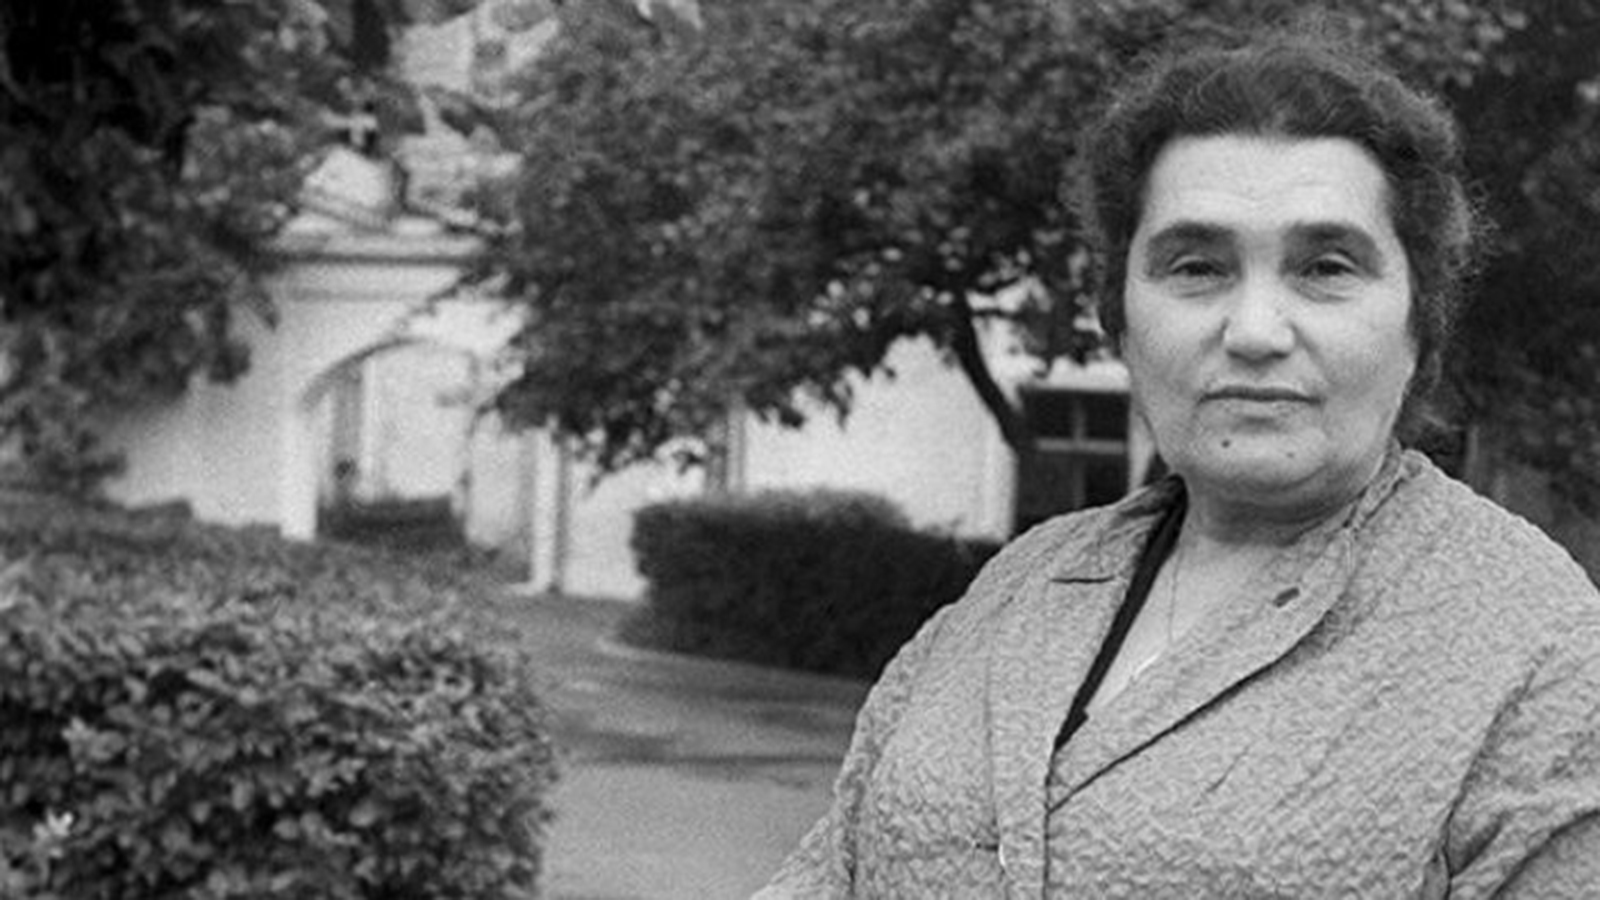 Биография и личная жизнь Евгении Гинзбург: история женщины в советском гулаге